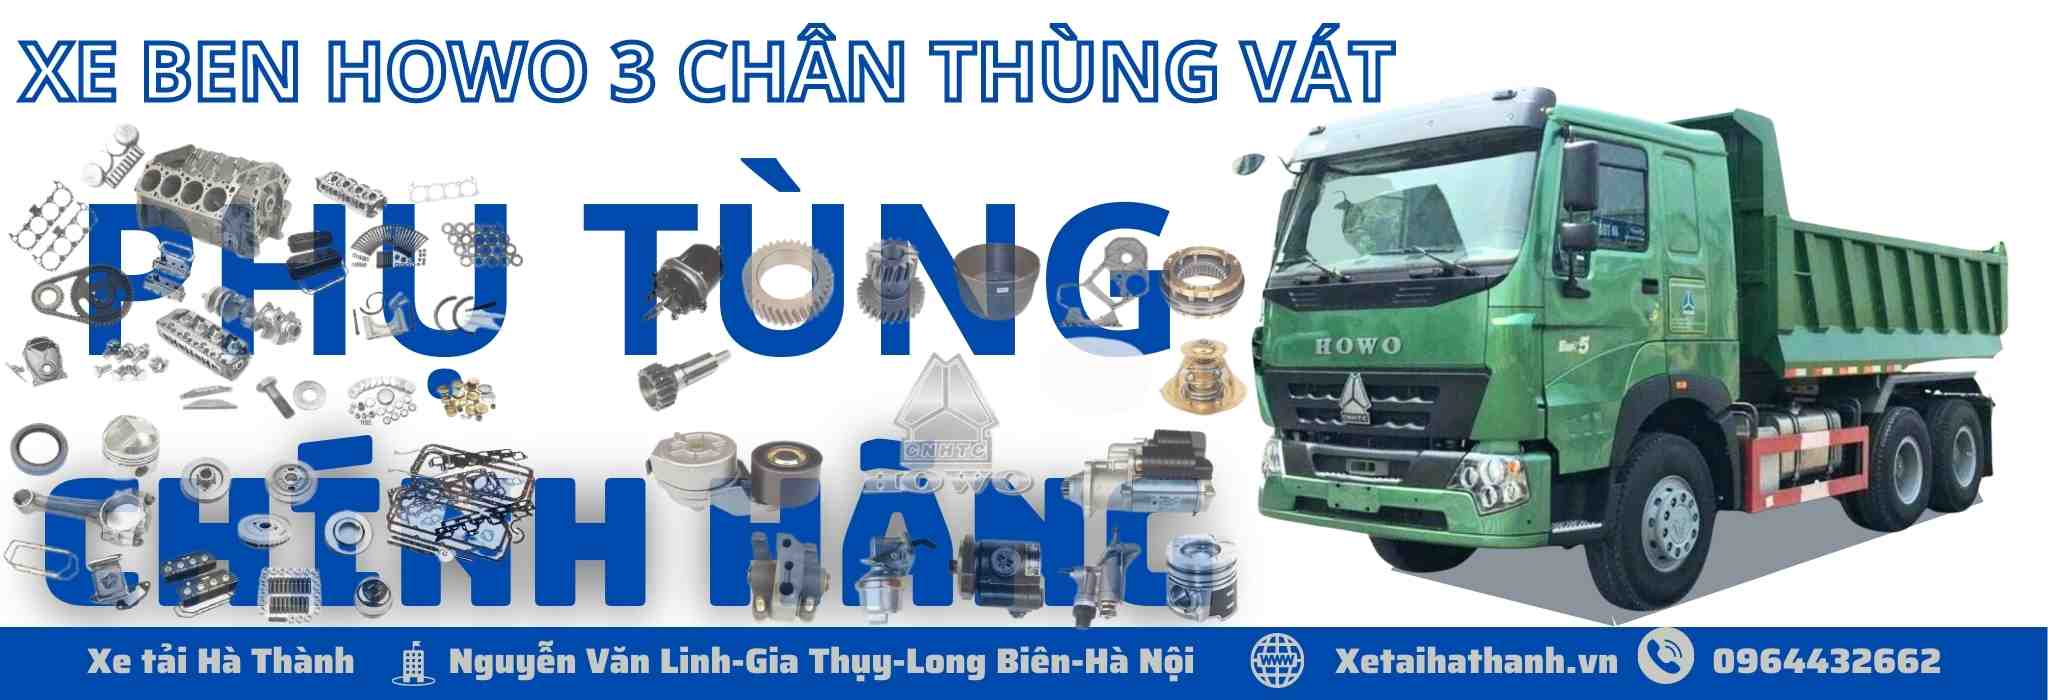 phu-tung-xe-ben-howo-3-chan-thung-vat